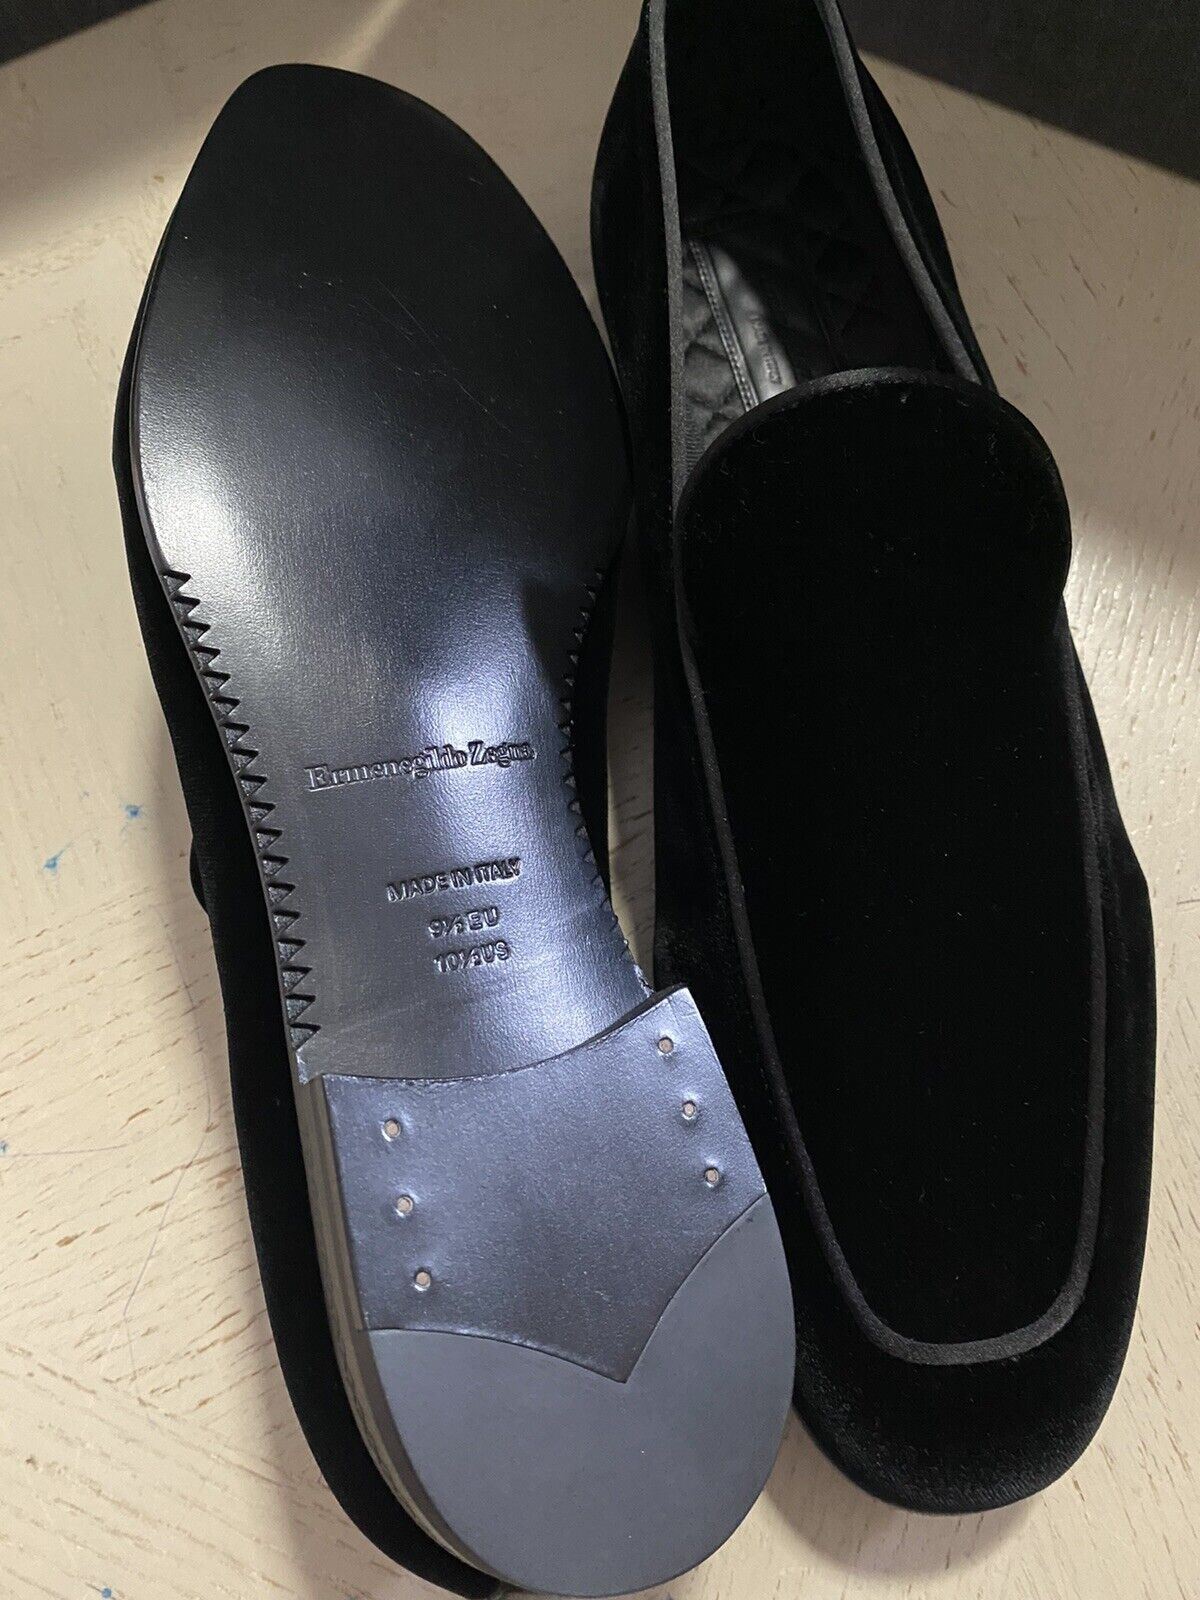 New $650 Ermenegildo Zegna Corduroy Velvet/Leathe Loafers Shoes Black 10.5 US